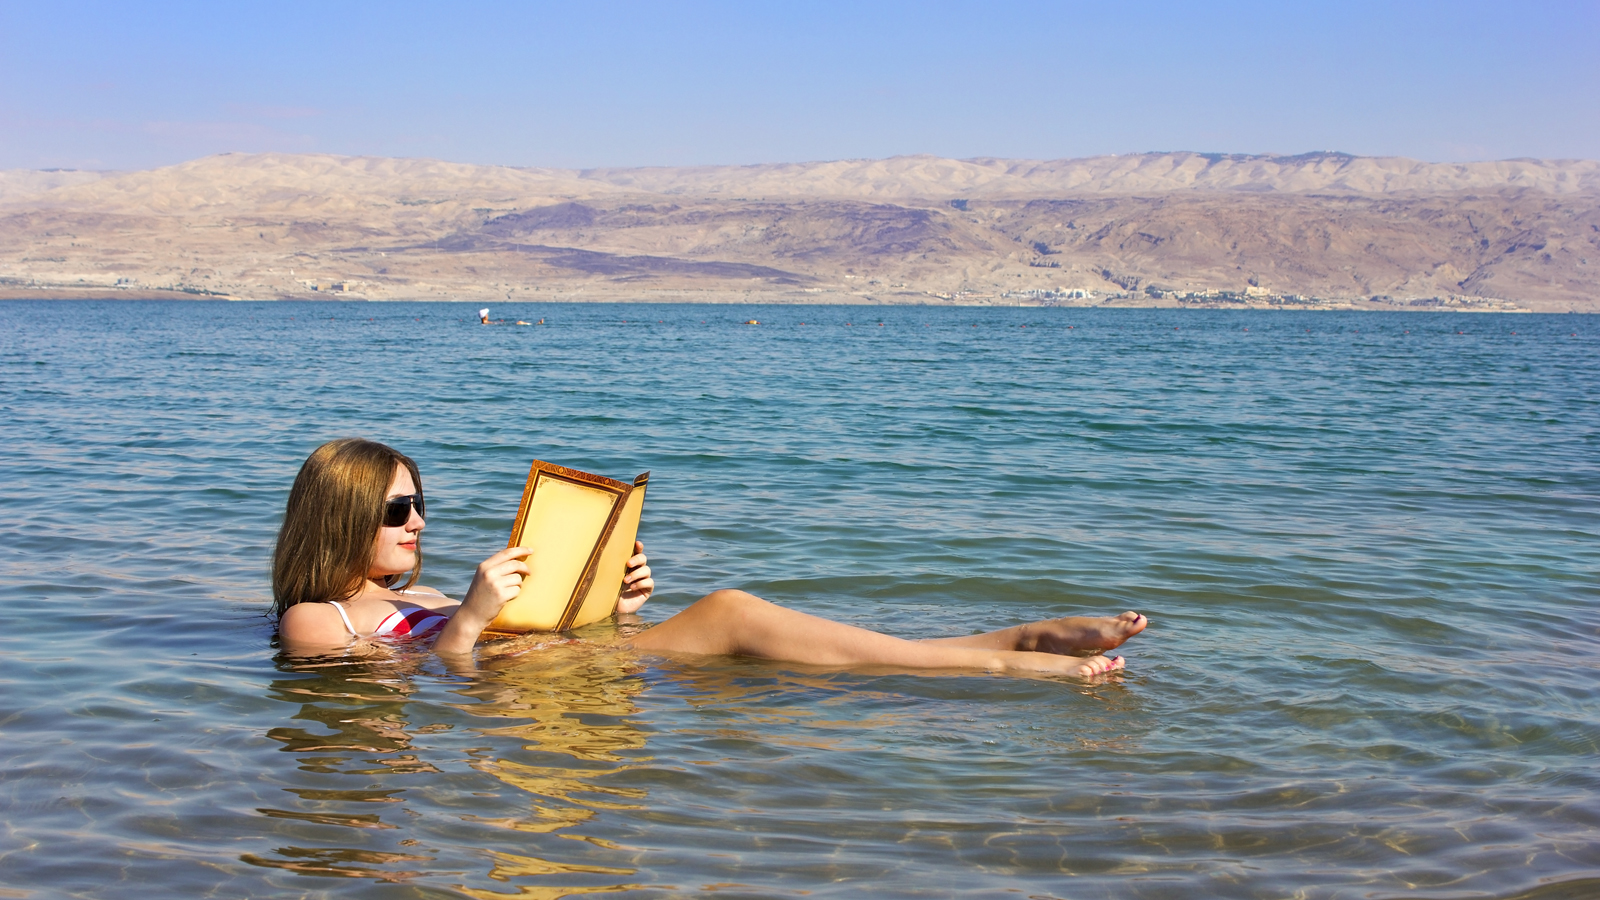 死海-Dead Sea-shutterstock_272444228_1600X900